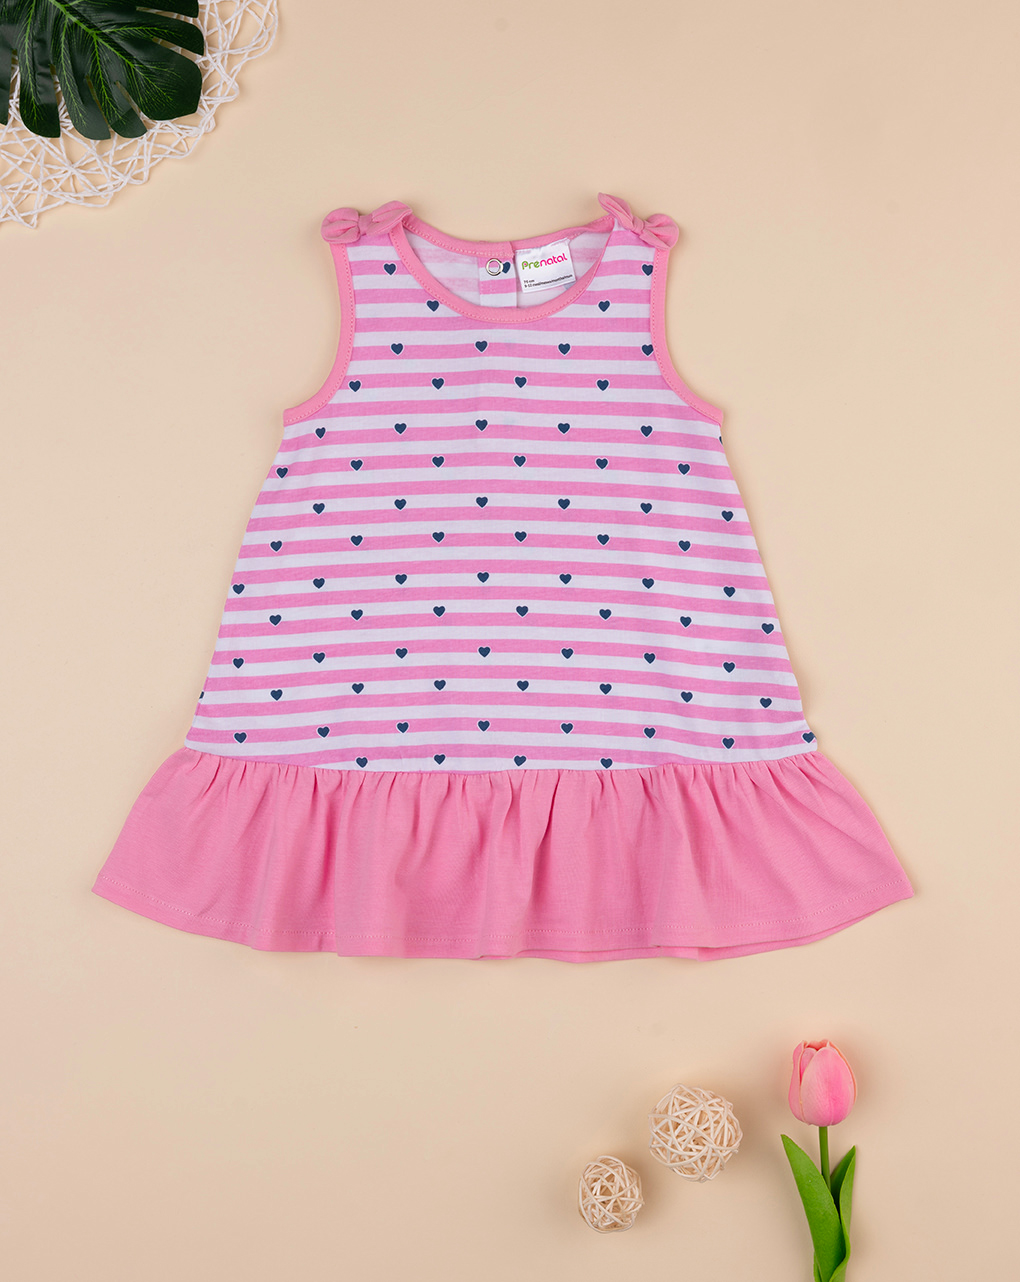 βρεφικό φόρεμα ριγέ ροζ/λευκό με καρδούλες για κορίτσι - Prénatal